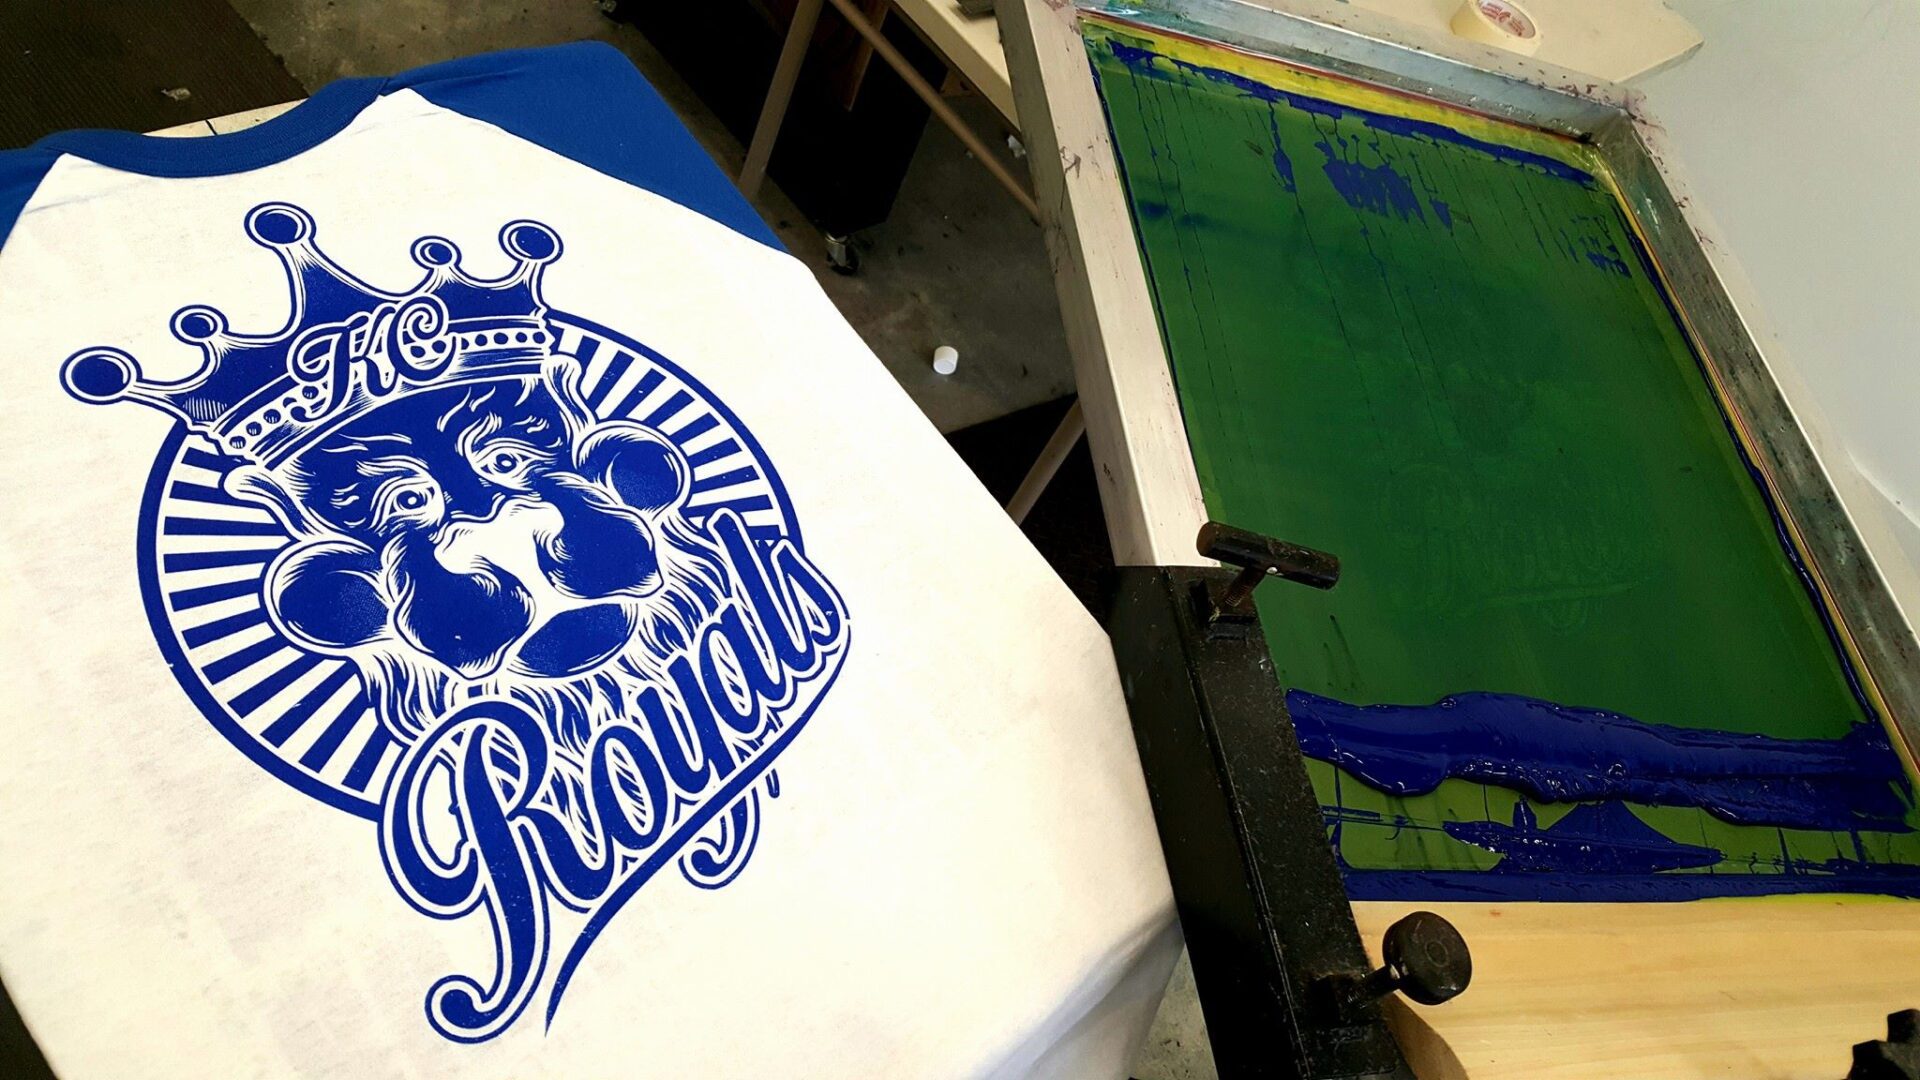 Royals logo printed on a shirt